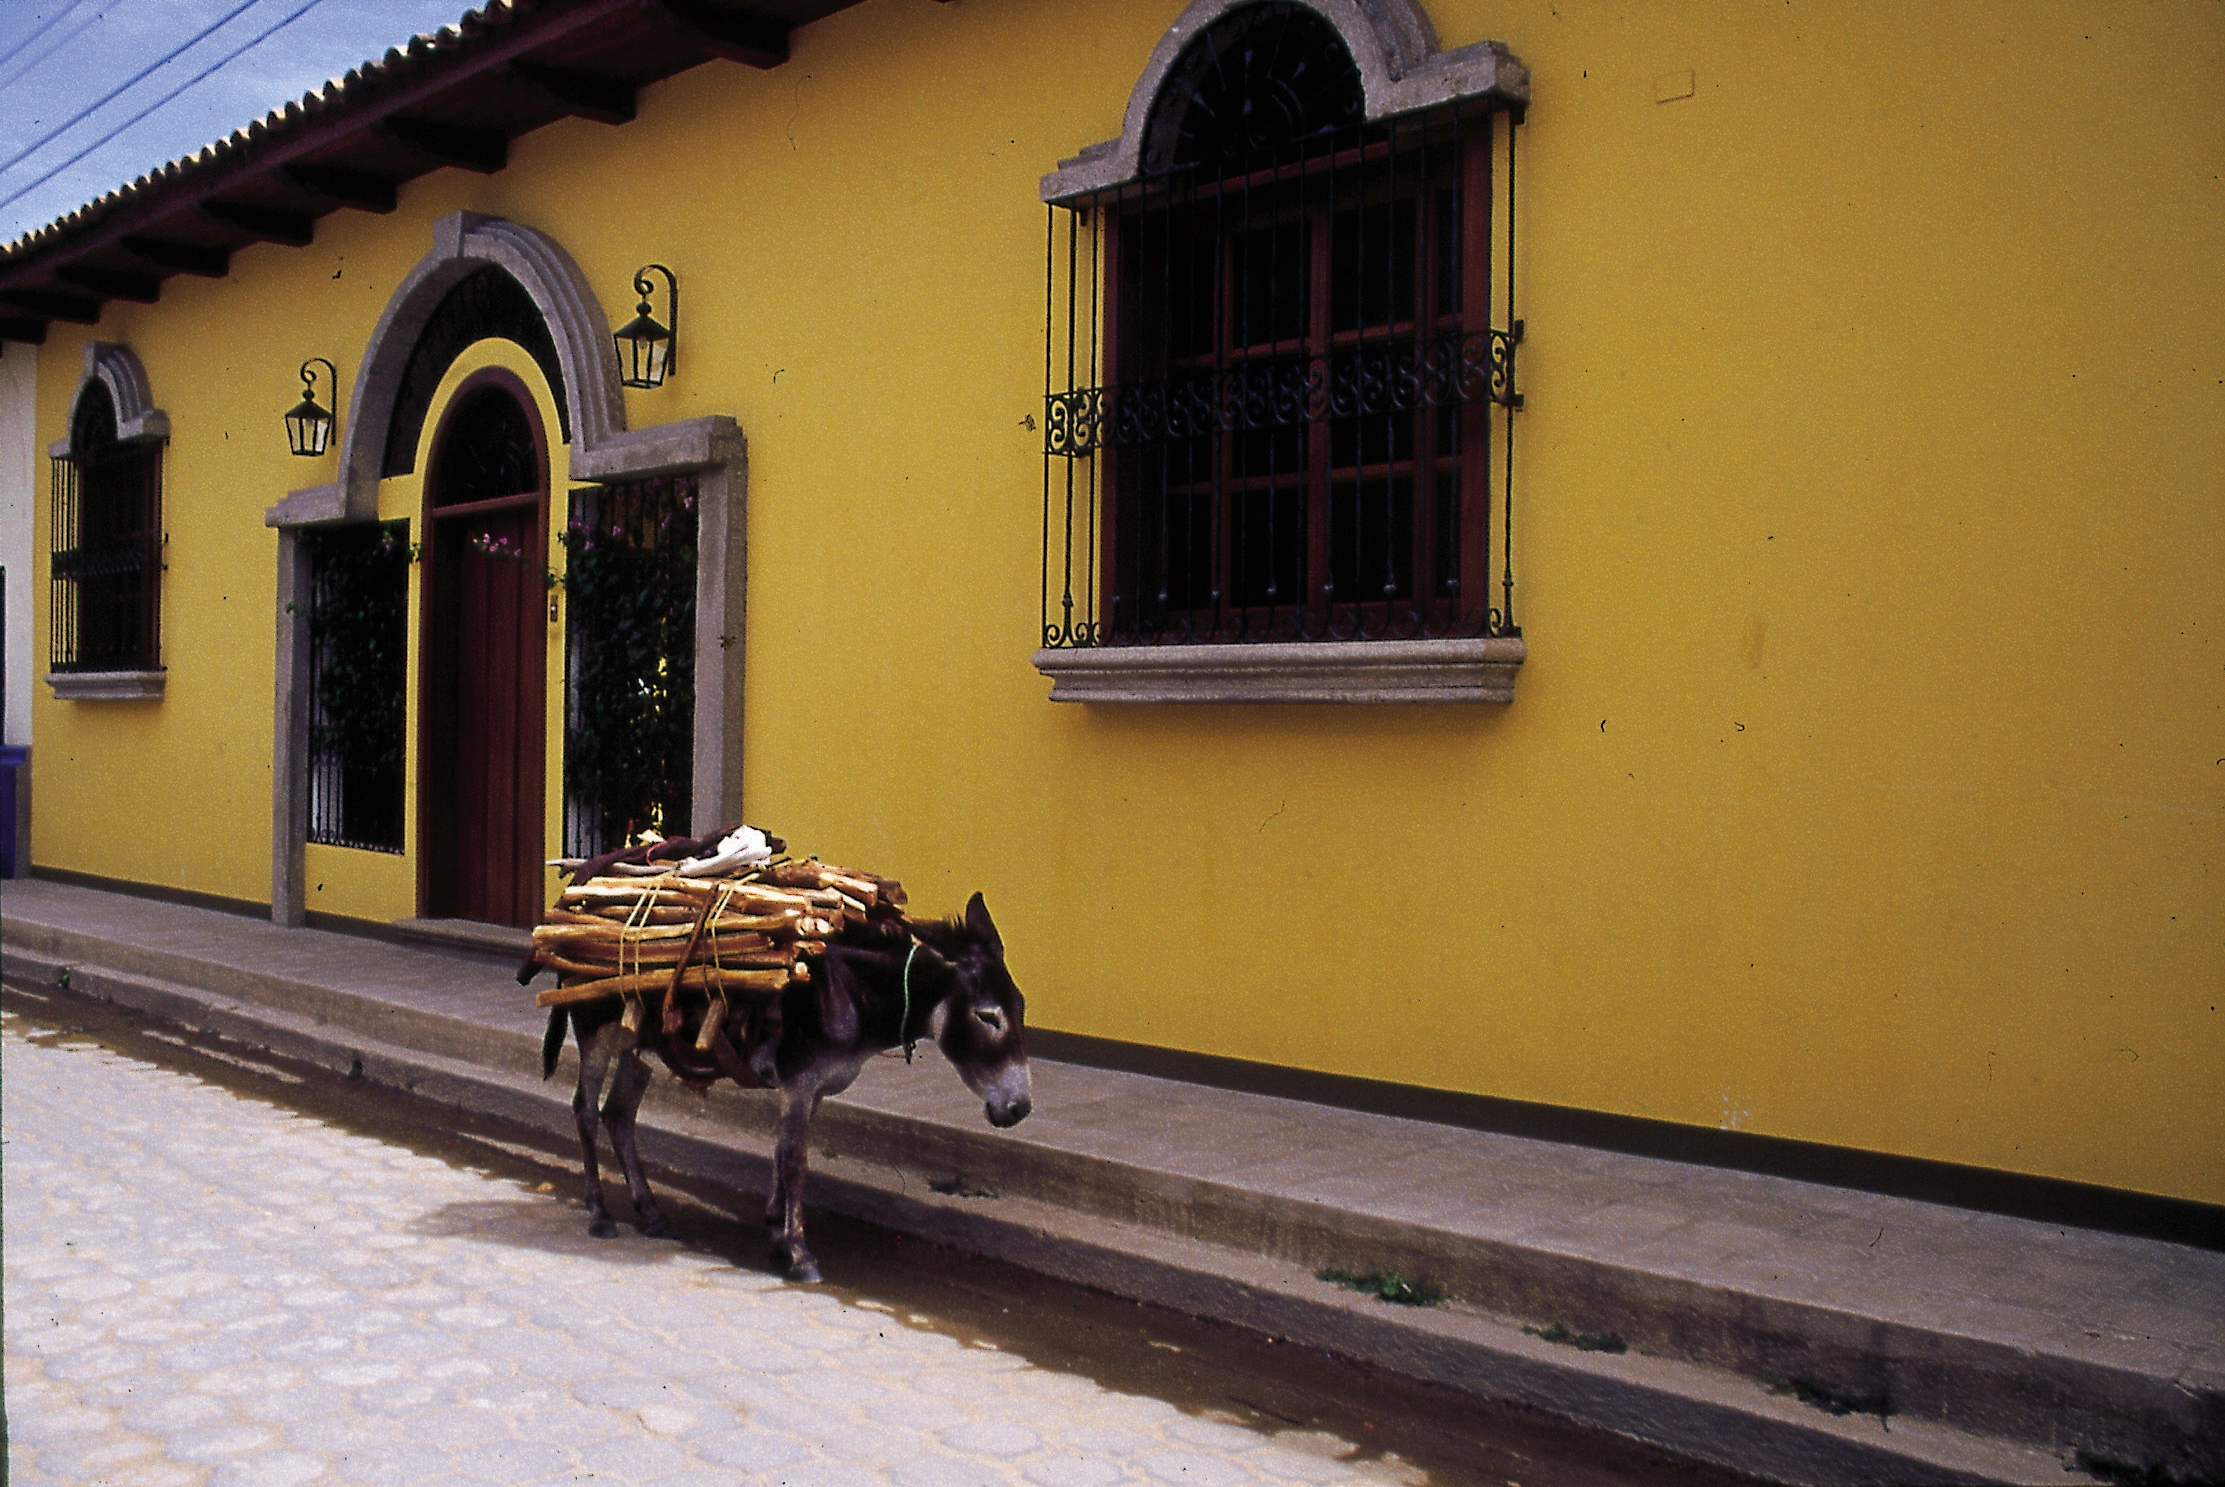 Granada Nicaragua